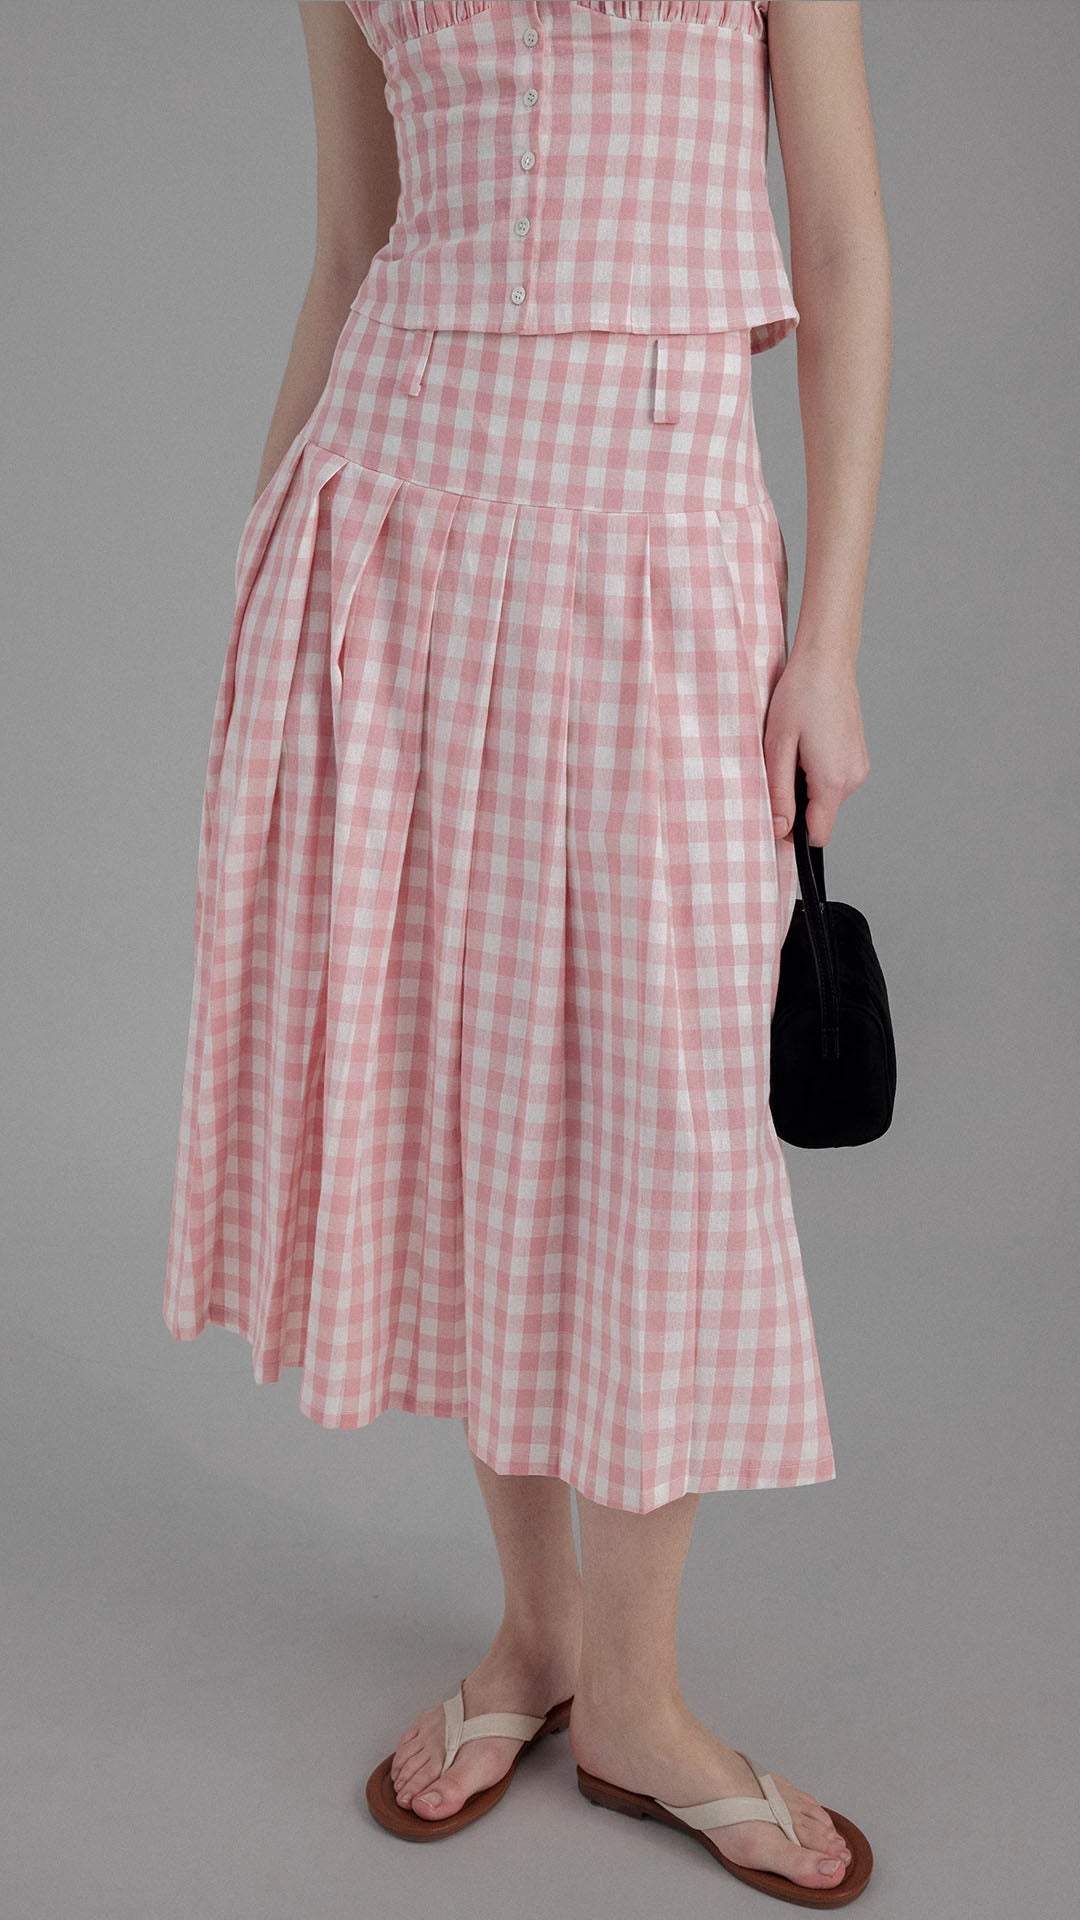 Vintage High Waist Plaid Pleated Skirt / top